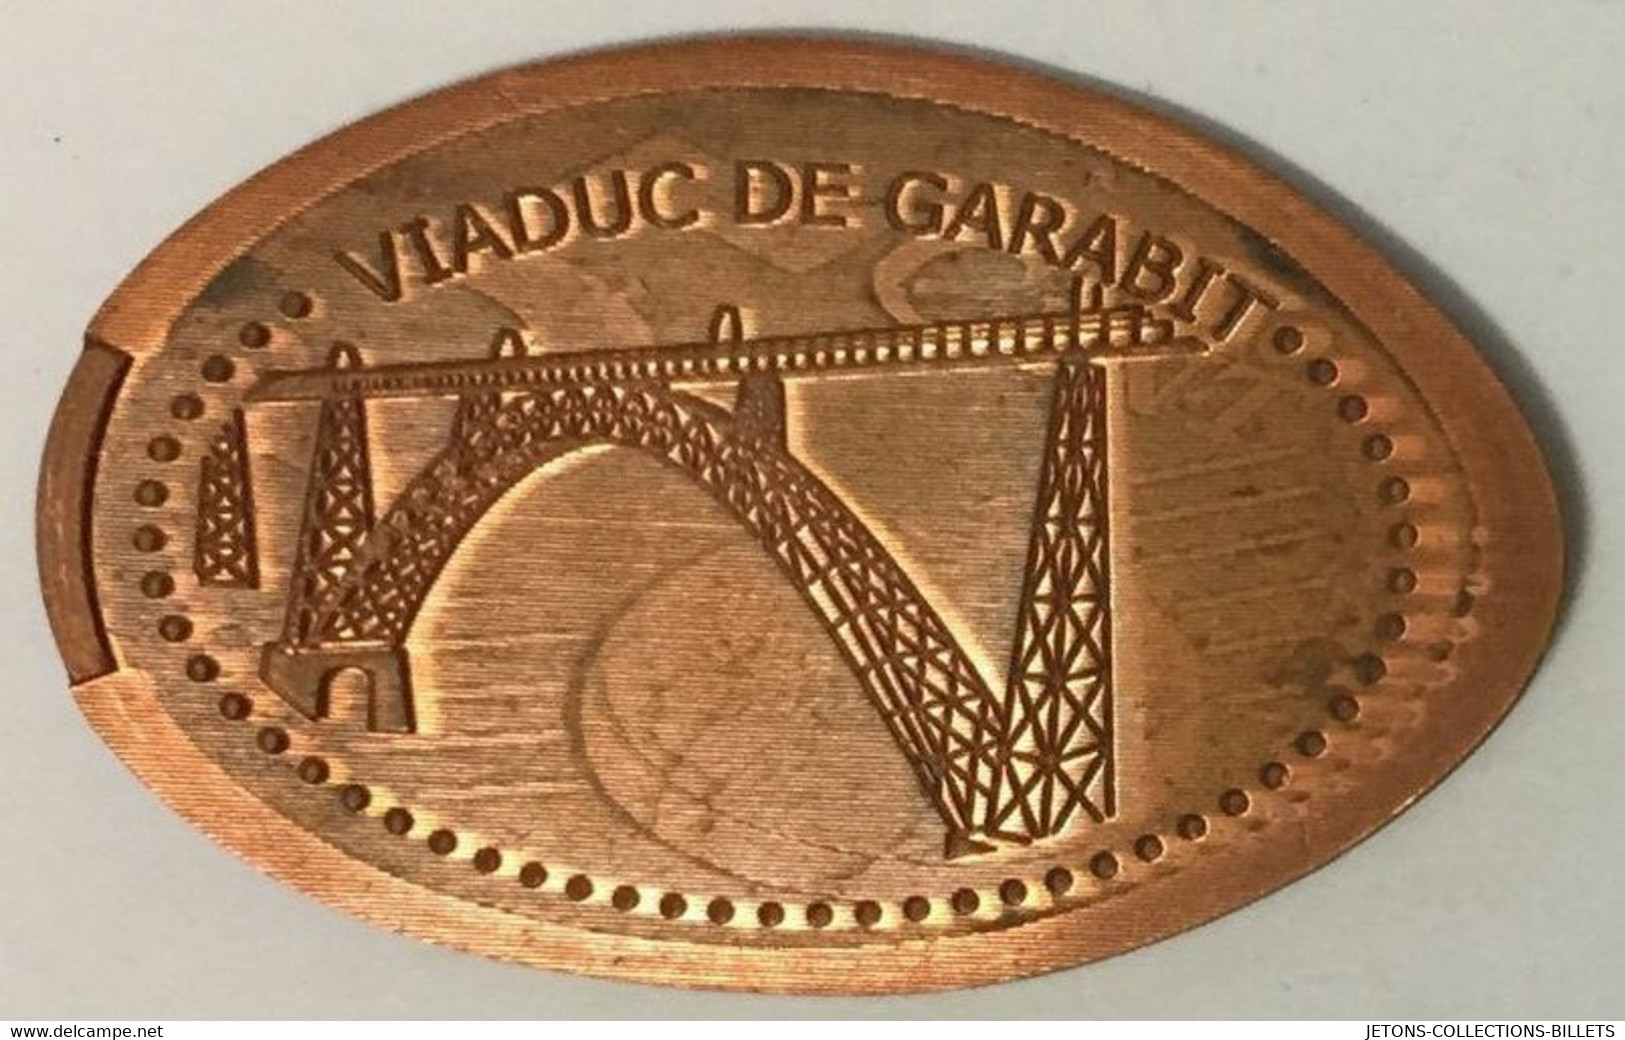 15 VIADUC DE GARABIT CONSTRUCTION PENNY ELONGATED COINS 1 PIÈCE ÉCRASÉE TOURISTIQUE MEDALS TOKENS MONNAIE - Monedas Elongadas (elongated Coins)